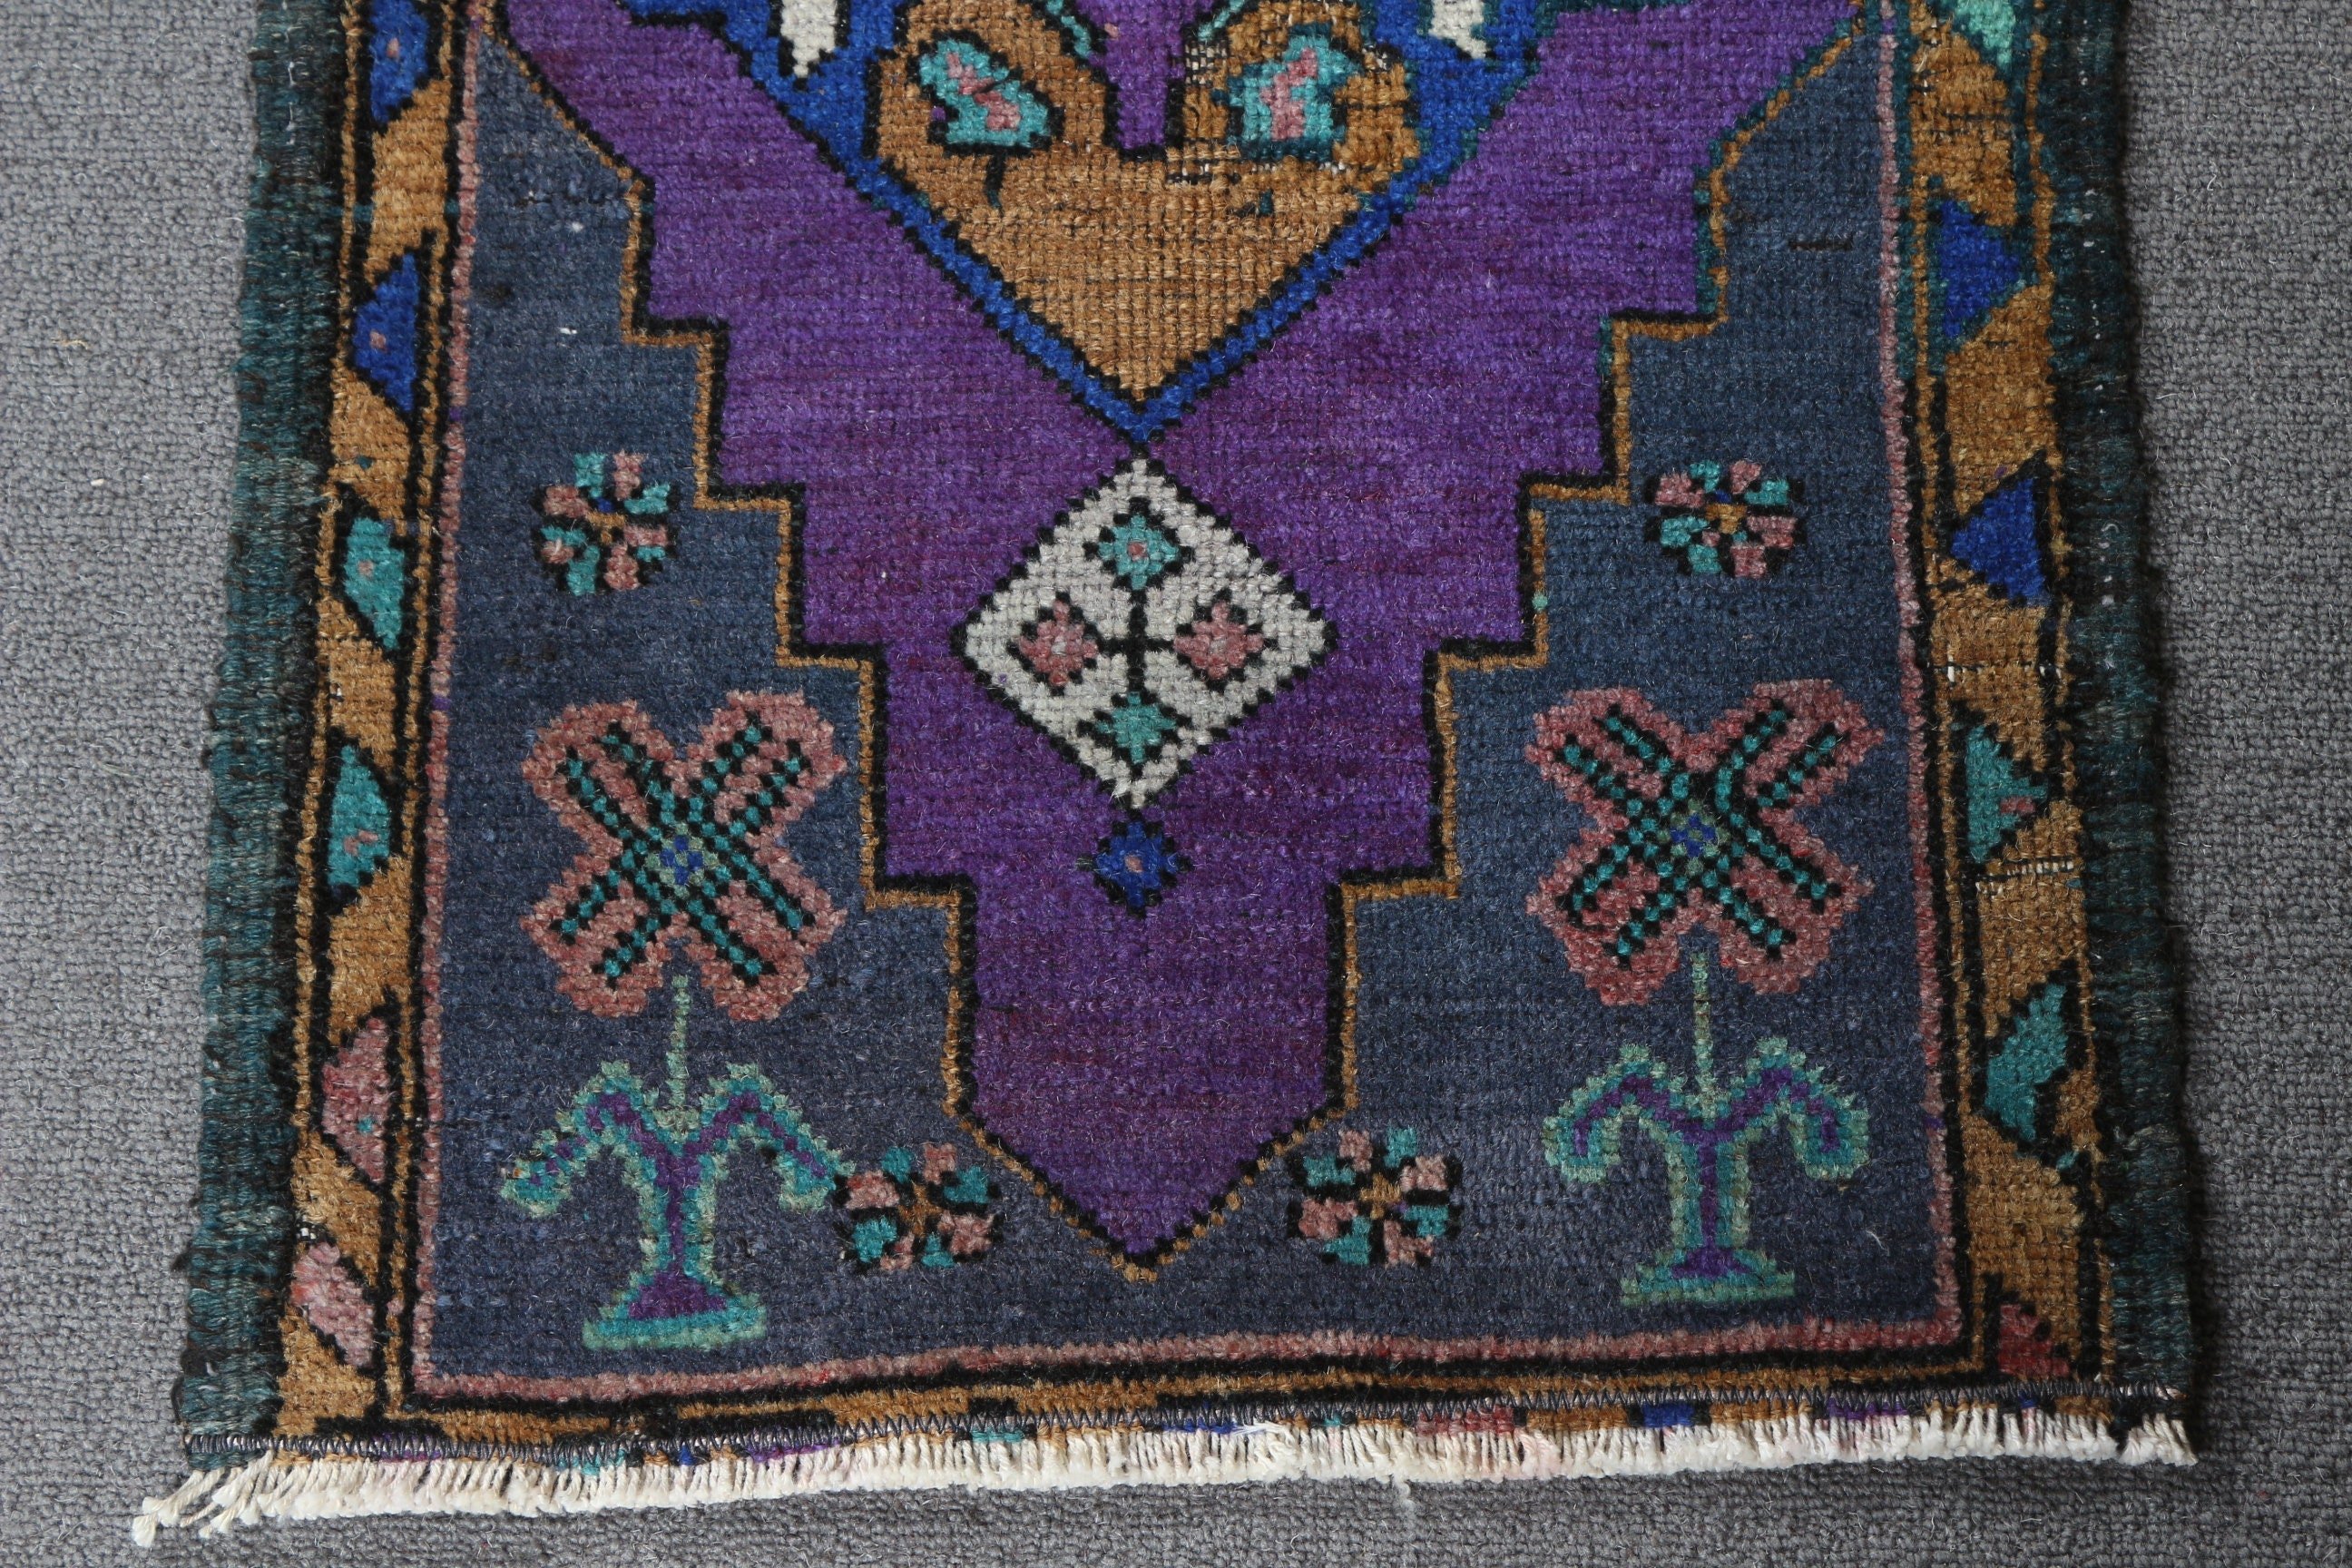 Anatolian Rugs, Rugs for Nursery, Bedroom Rug, Turkish Rugs, Purple Floor Rug, Vintage Rugs, Entry Rug, Door Mat Rug, 1.3x2.6 ft Small Rug